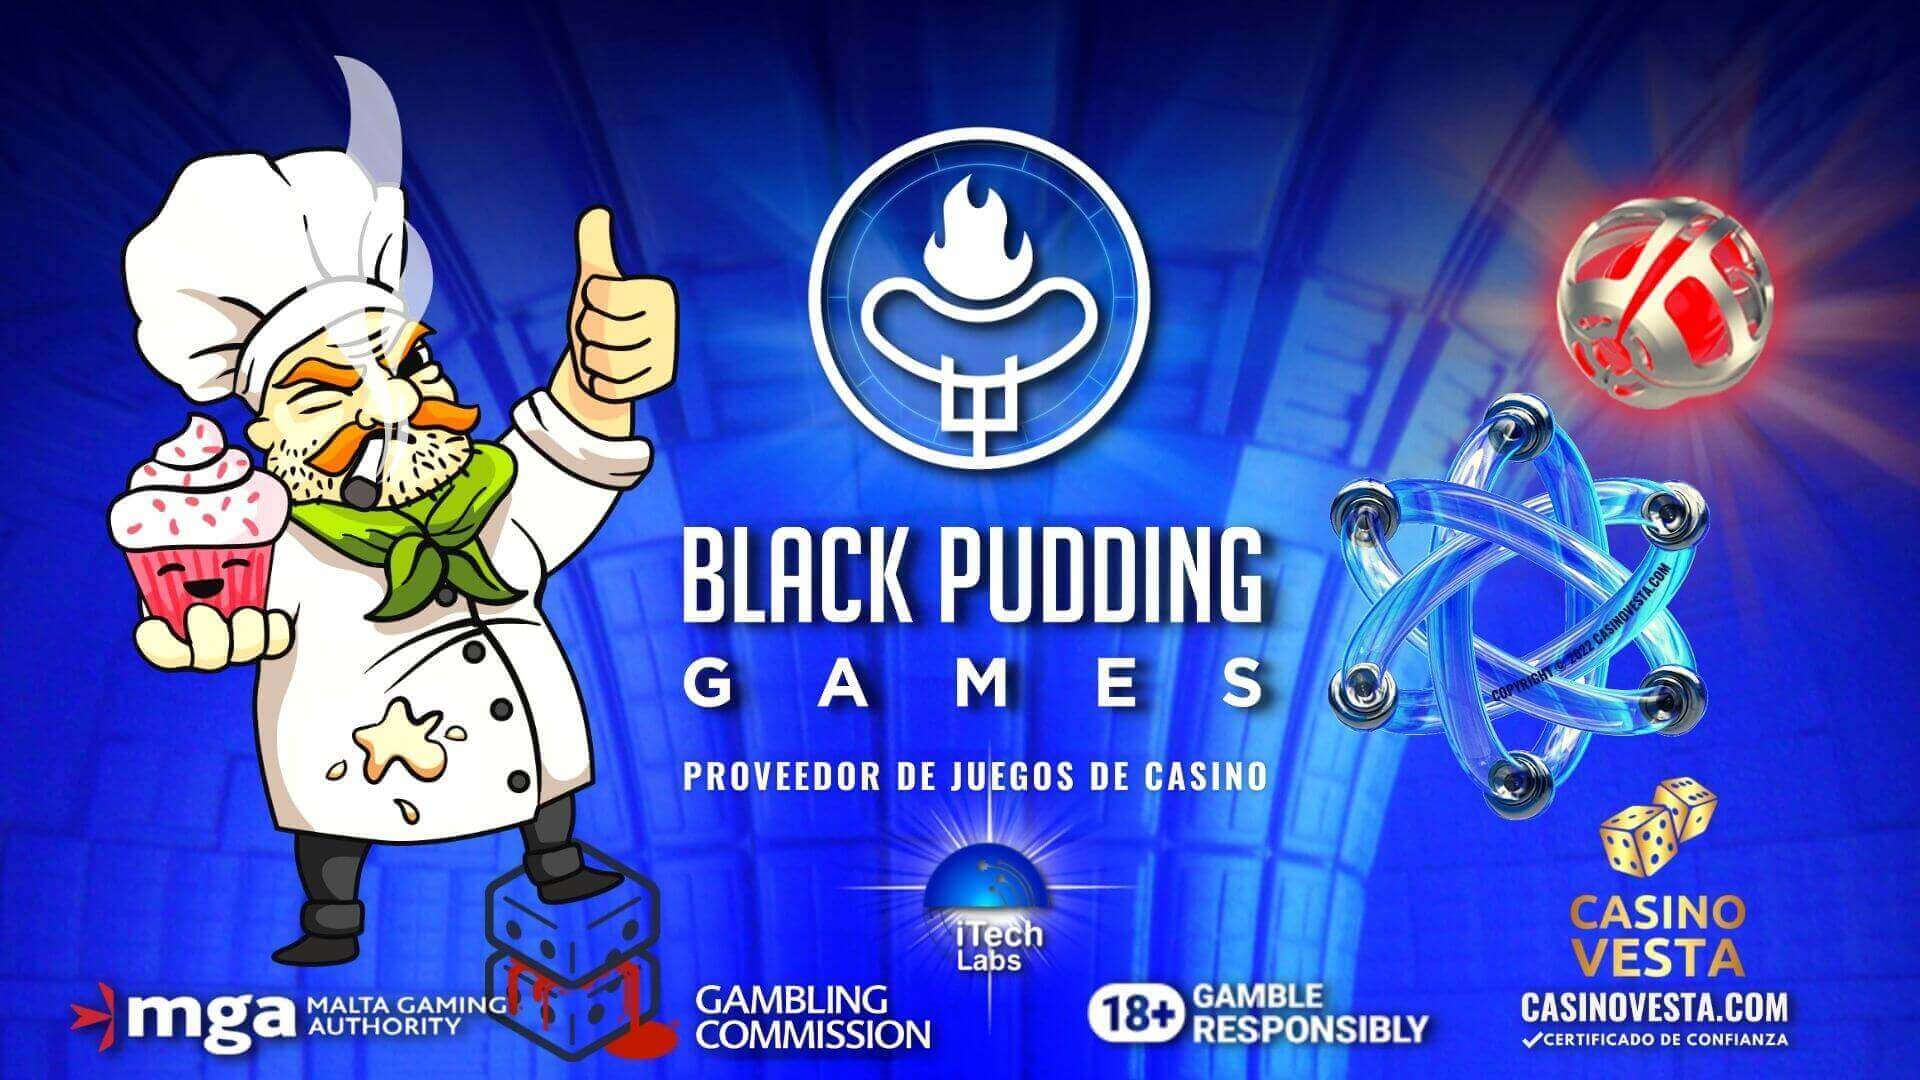 Revisión del proveedor de juegos de casino en línea Black Pudding Games